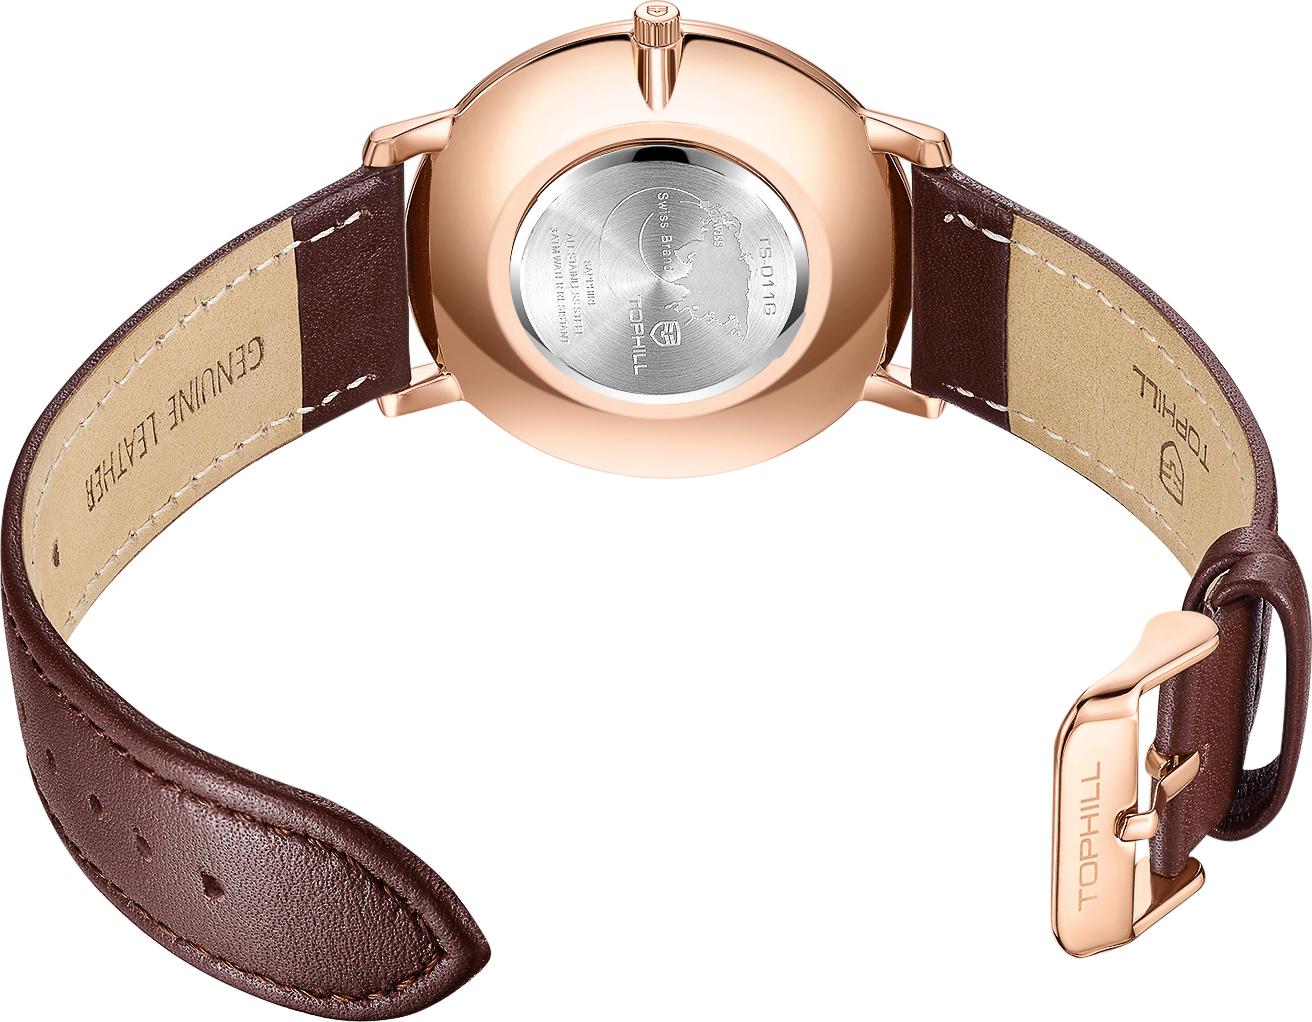 Đồng hồ nam dây da chính hãng Thụy Sĩ TOPHILL TS011G.PZ3252